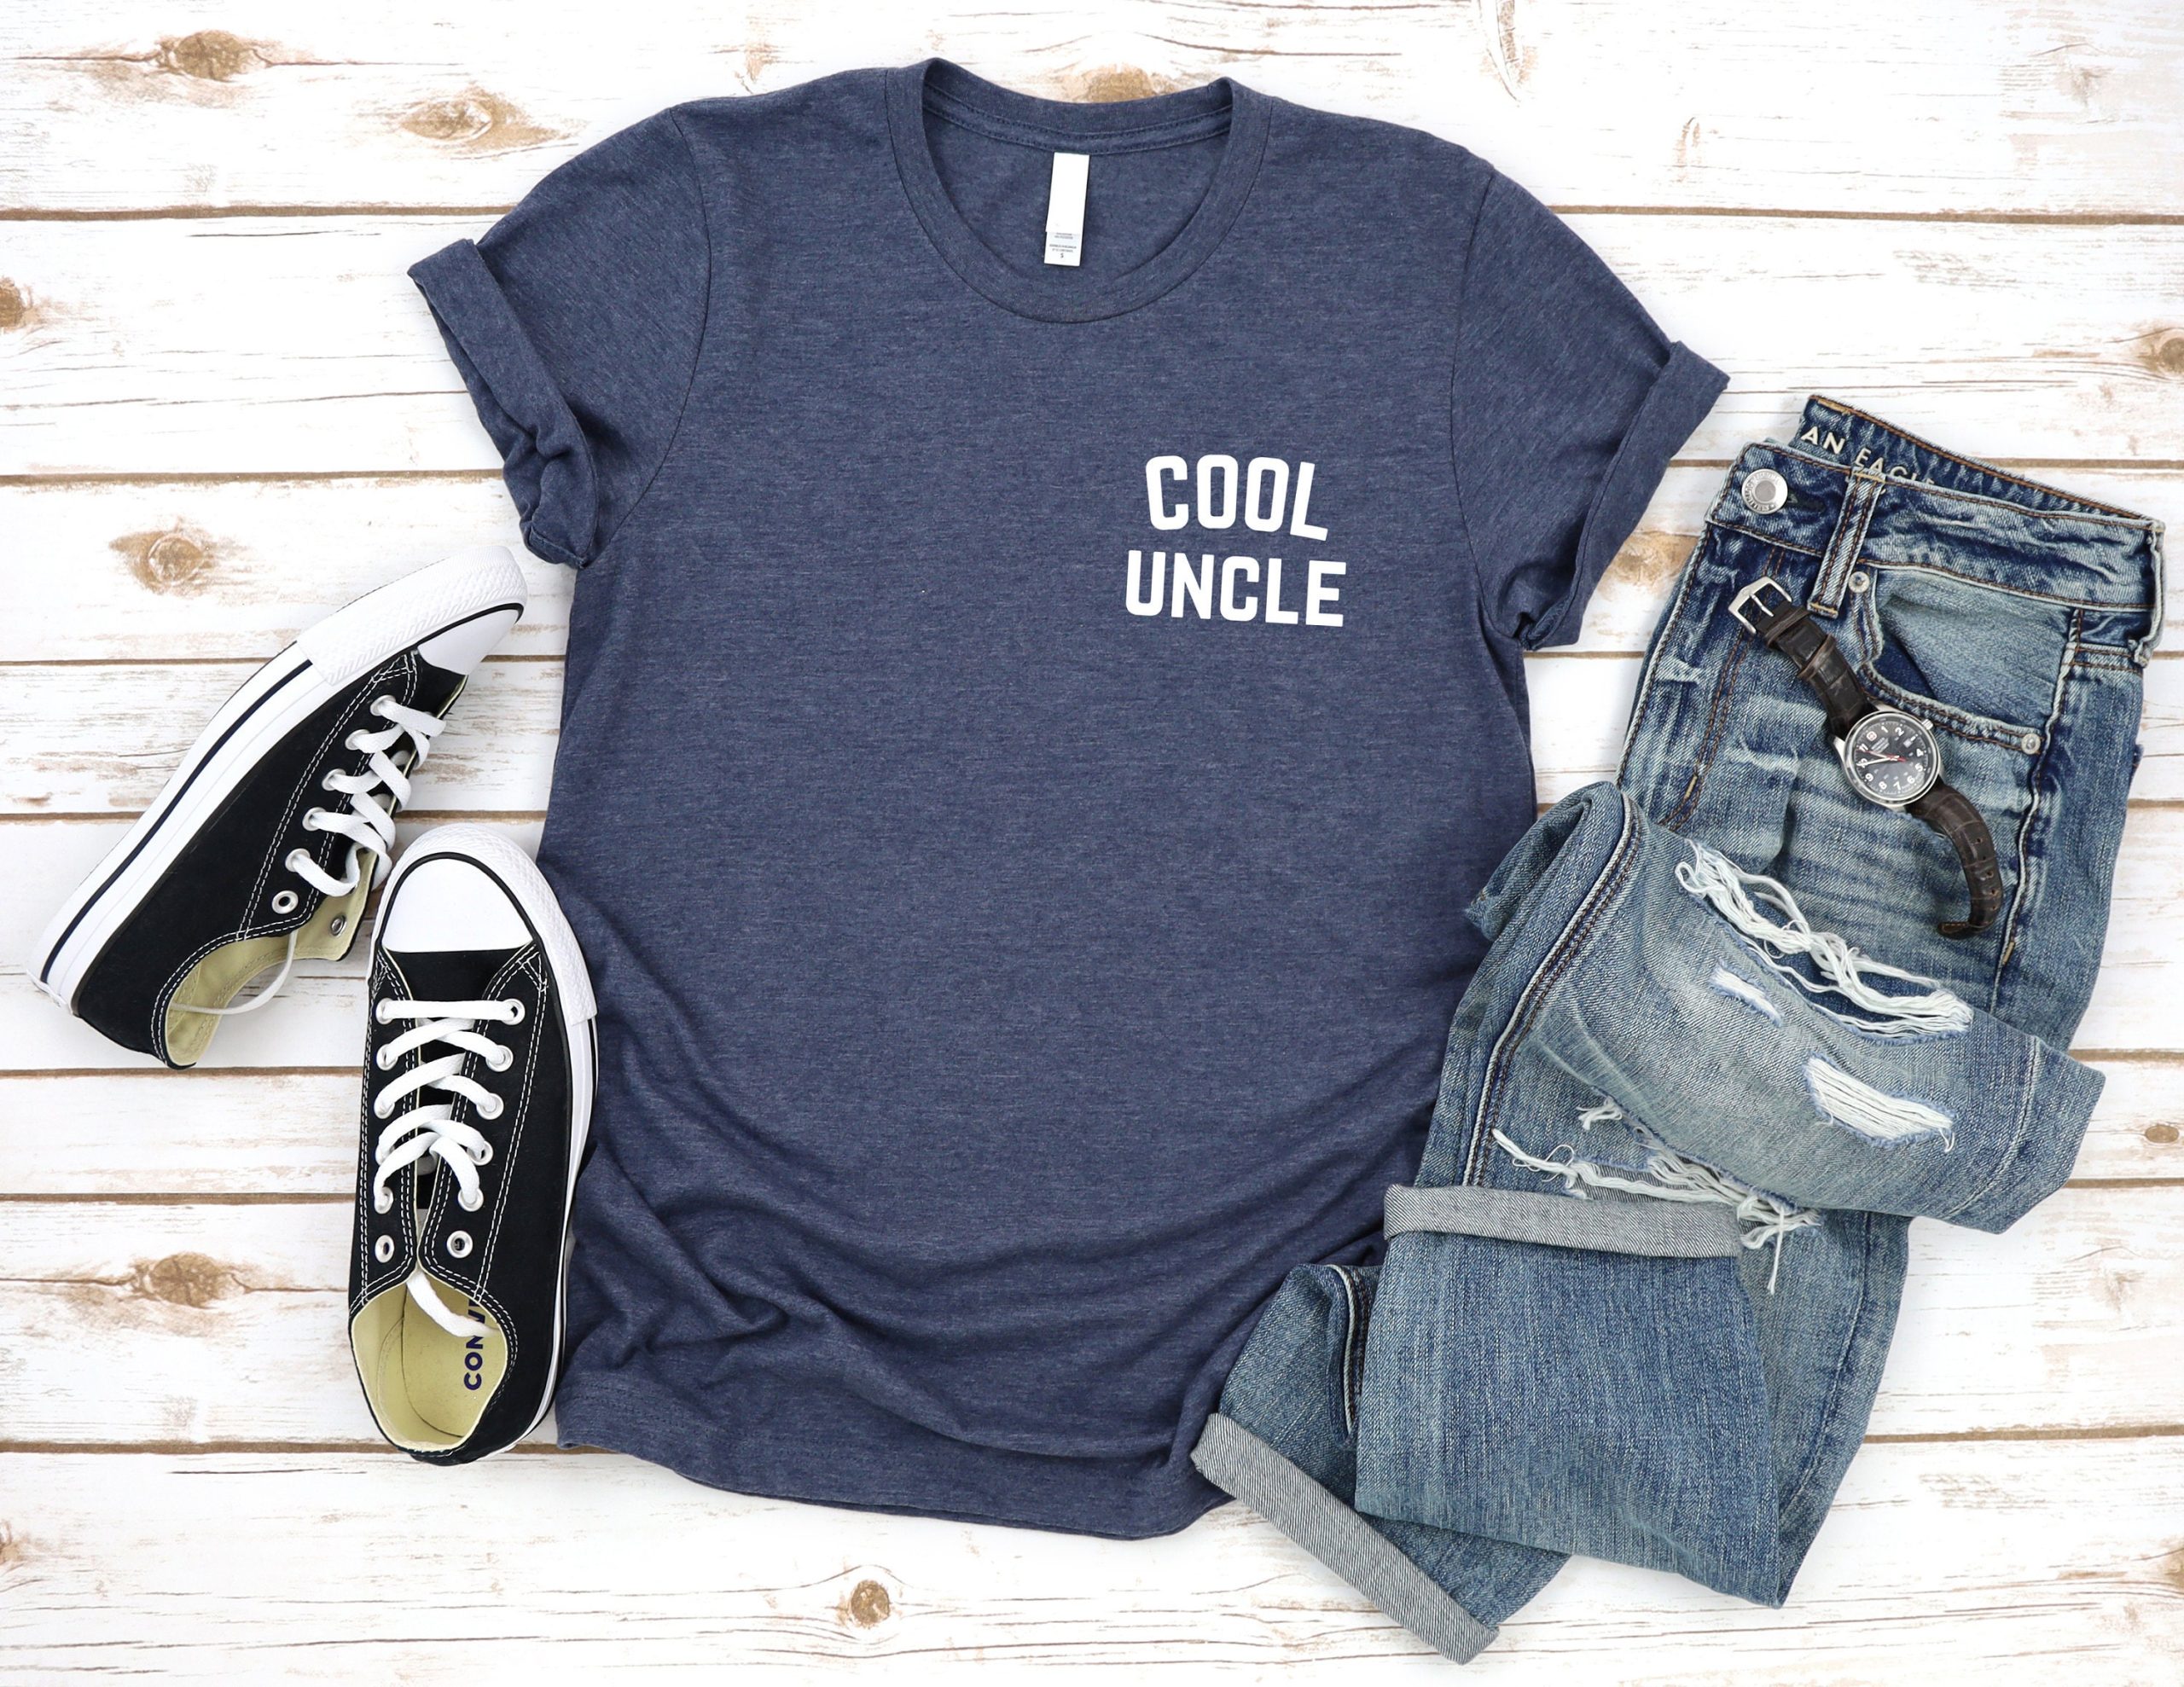 Cool Uncle Left Chest Unisex T-Shirt